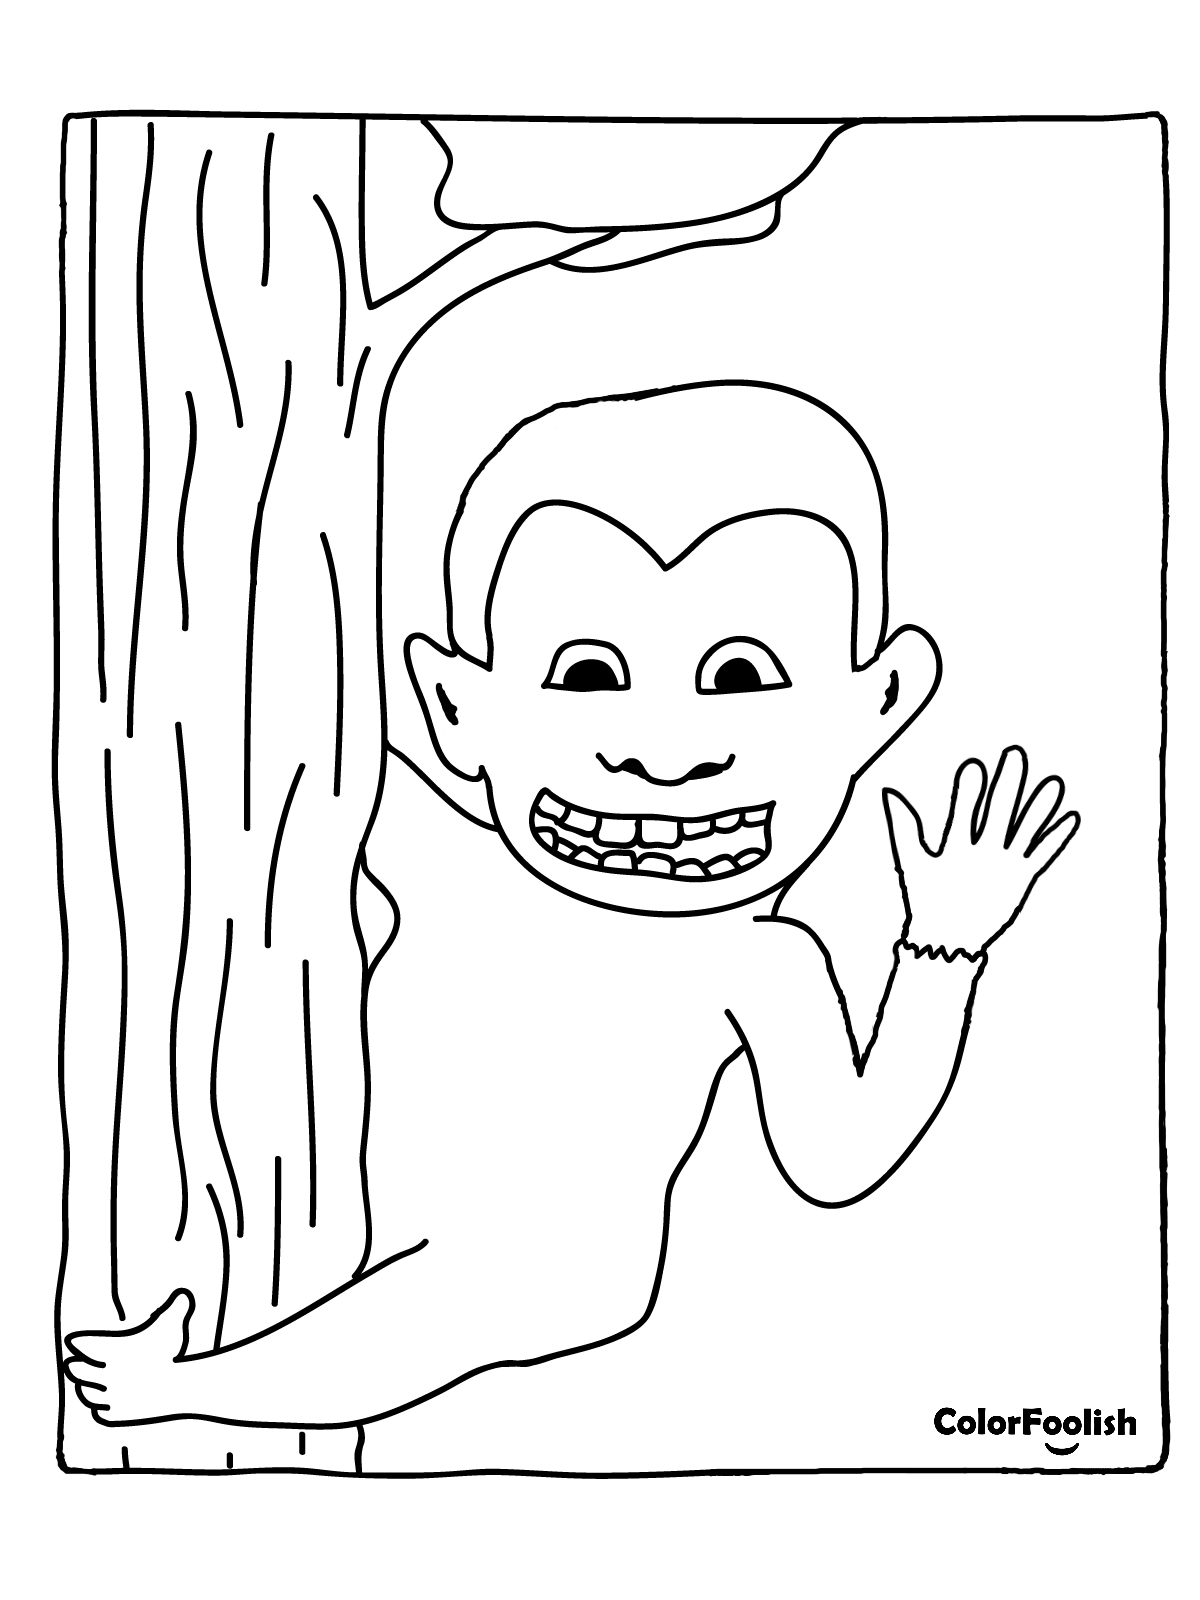 Dibujo para colorear de un mono en un árbol